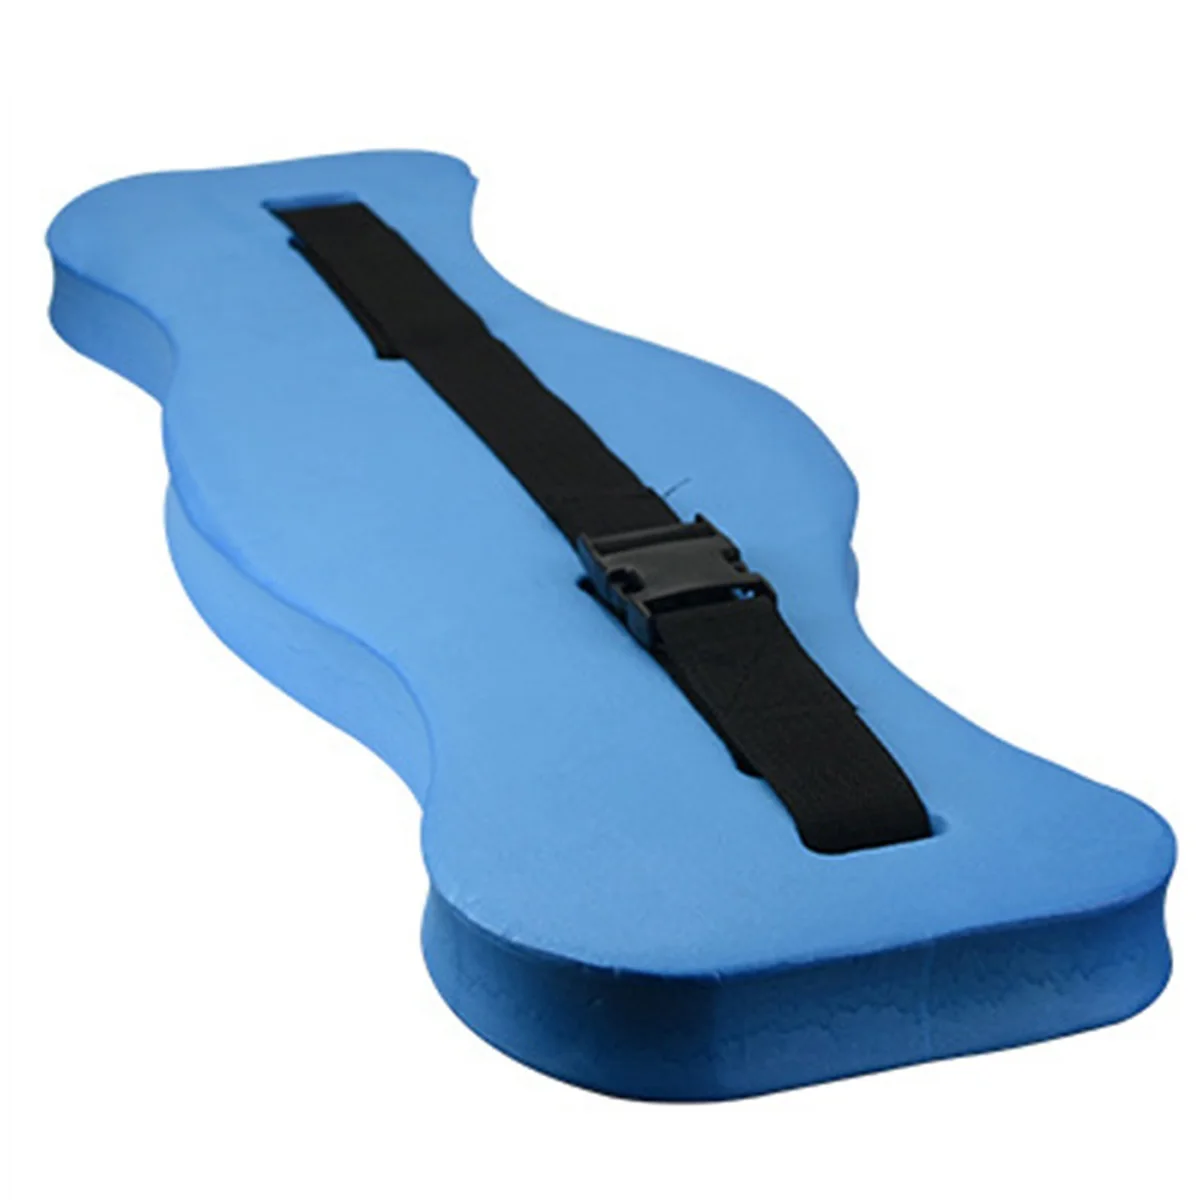 SGODDE 3 цвета регулируемый плавающий пенопластовый пояс для плавания поясное тренировочное оборудование для взрослых и детей для плавания Детская безопасность для взрослых - Цвет: Синий